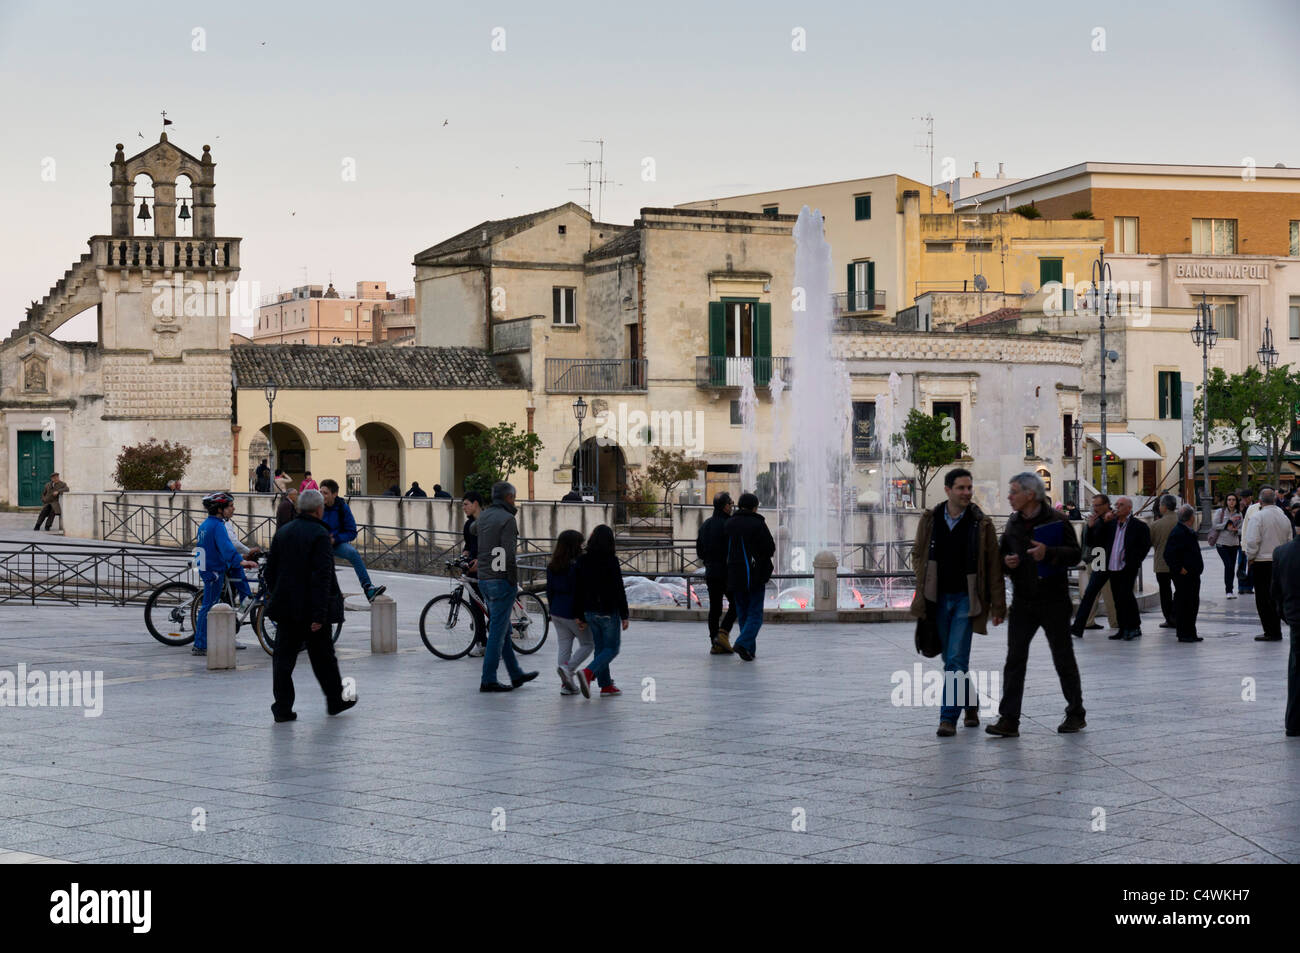 Italia - la principale Piazza Vittorio Veneto, dalla piazza della città di Matera. Persone in piazza nel tardo pomeriggio. Foto Stock